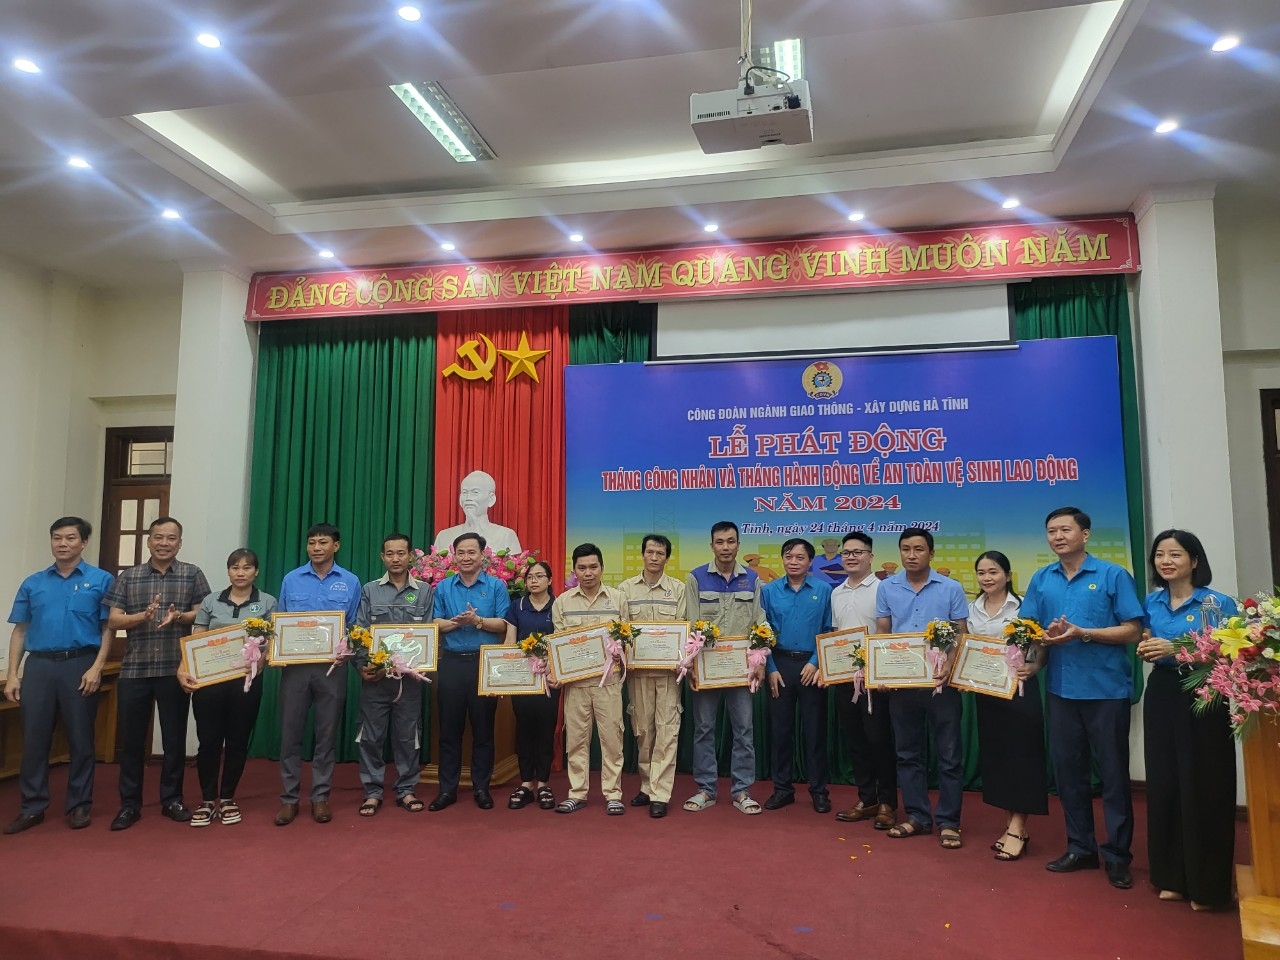 Hà Tĩnh: Công đoàn ngành Giao thông - Xây dựng tổ chức lễ phát động Tháng công nhân và an toàn vệ sinh lao động năm 2024